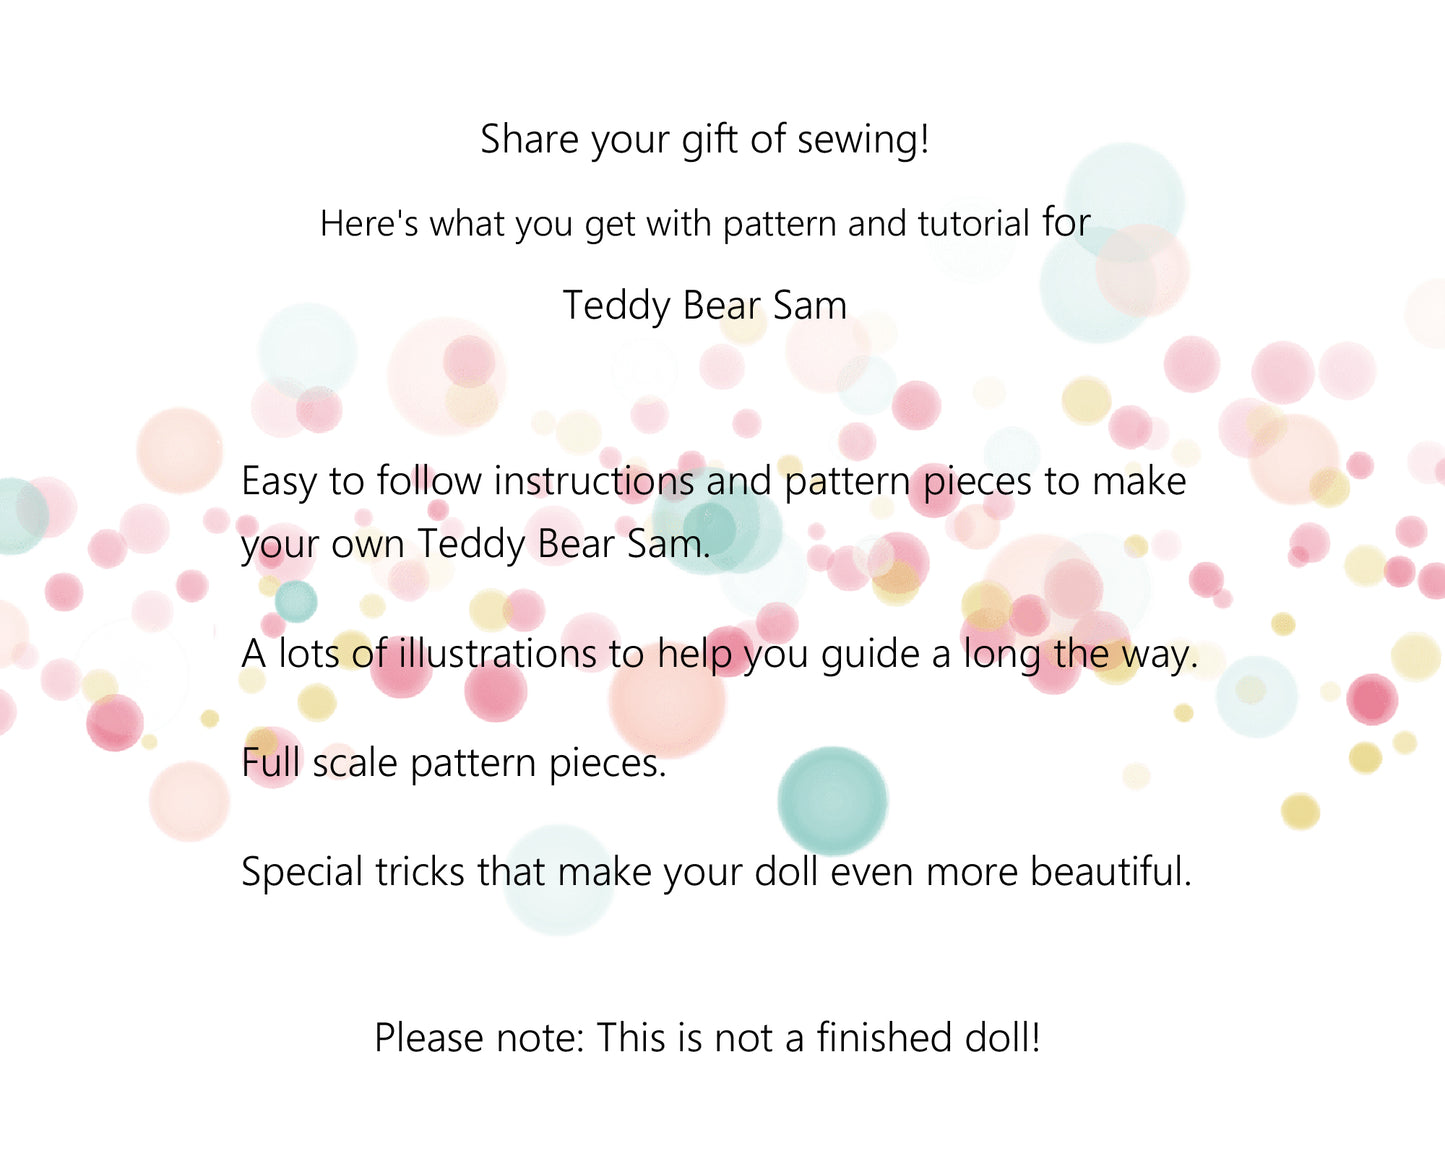 Teddy Bear Sam - PDF doll sewing pattern and tutorial 09